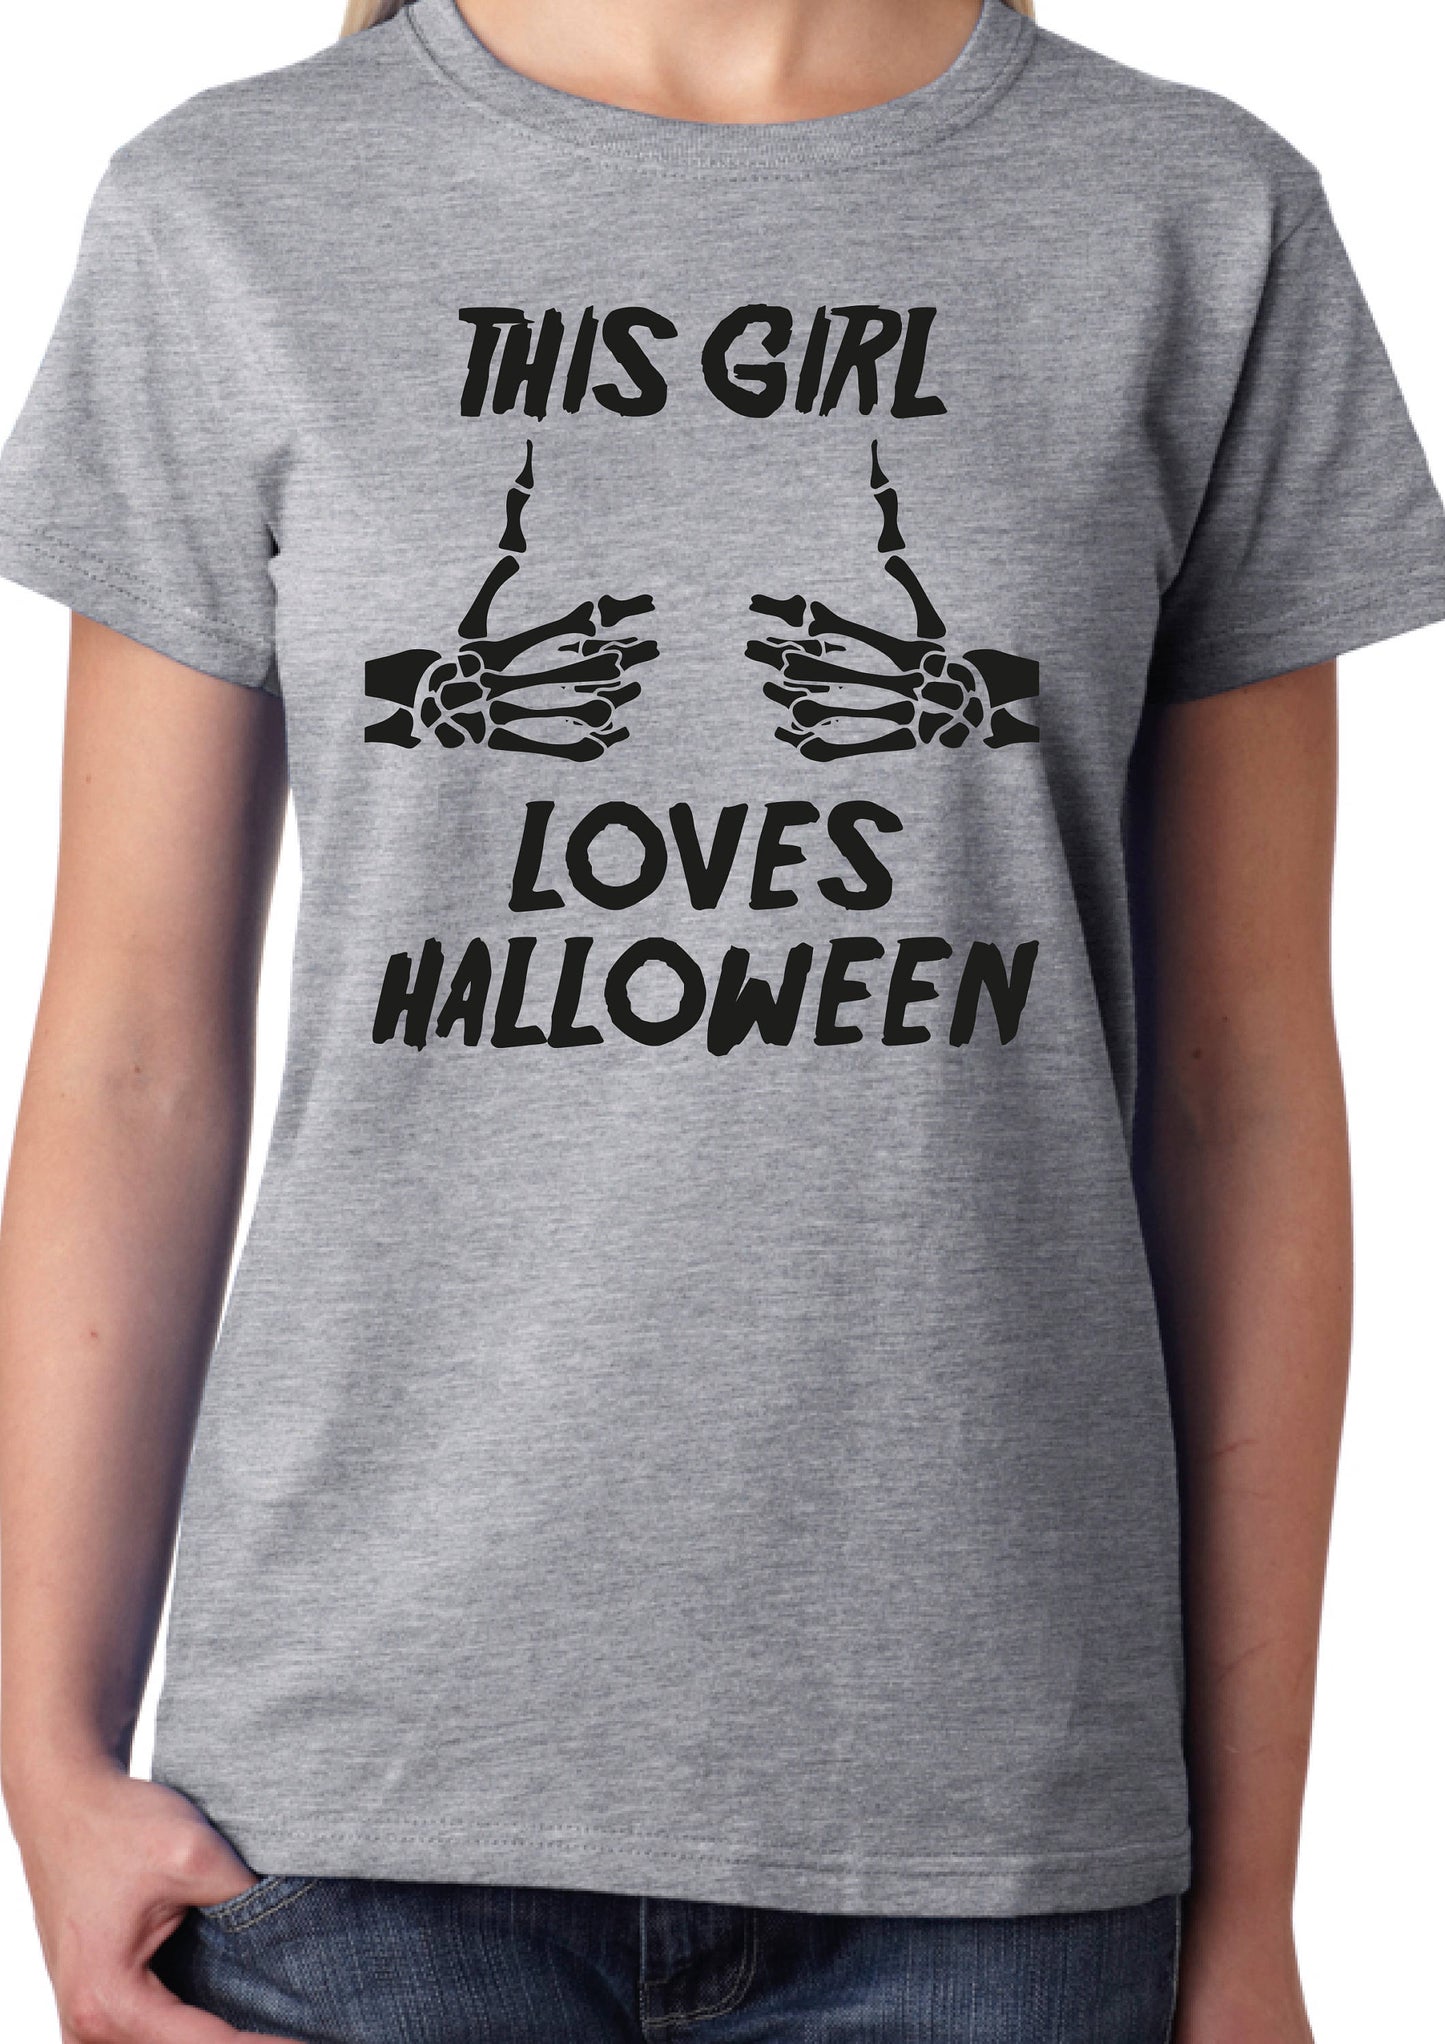 This Girl Loves Halloween T-Shirt, Funny, Skeleton Hands, Bones